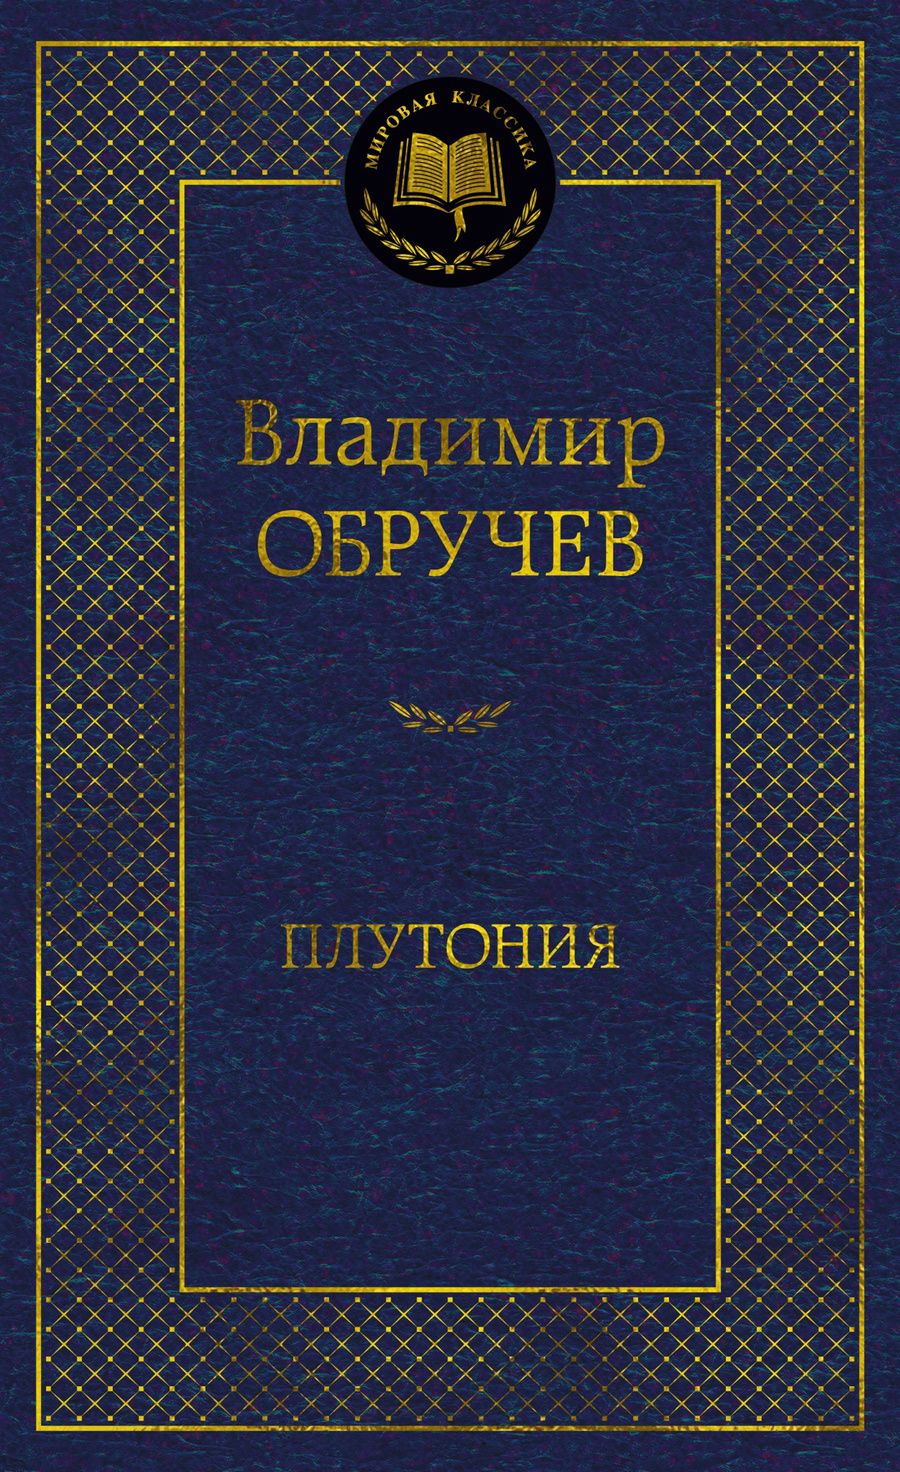 Обложка книги "Владимир Обручев: Плутония"